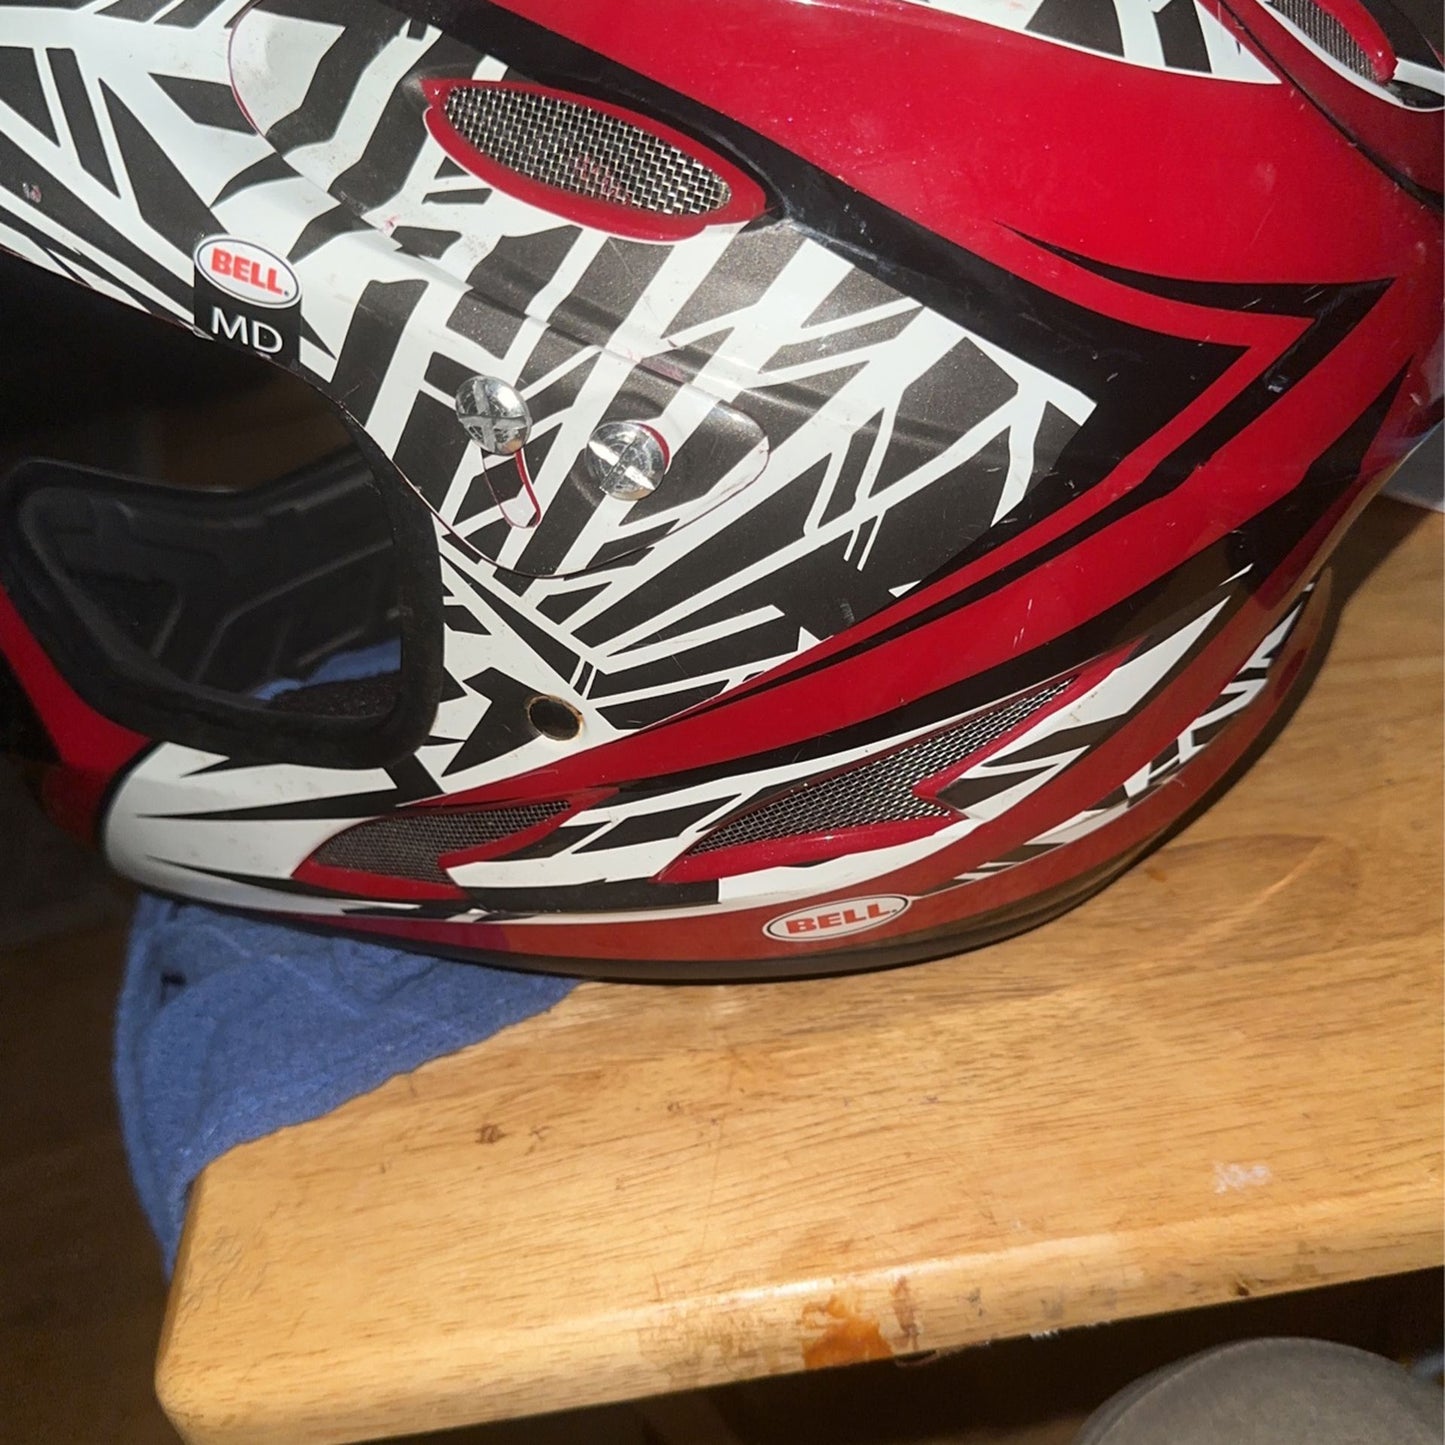 Medium Bell Dirt Bike Helmet Dirtbike Used